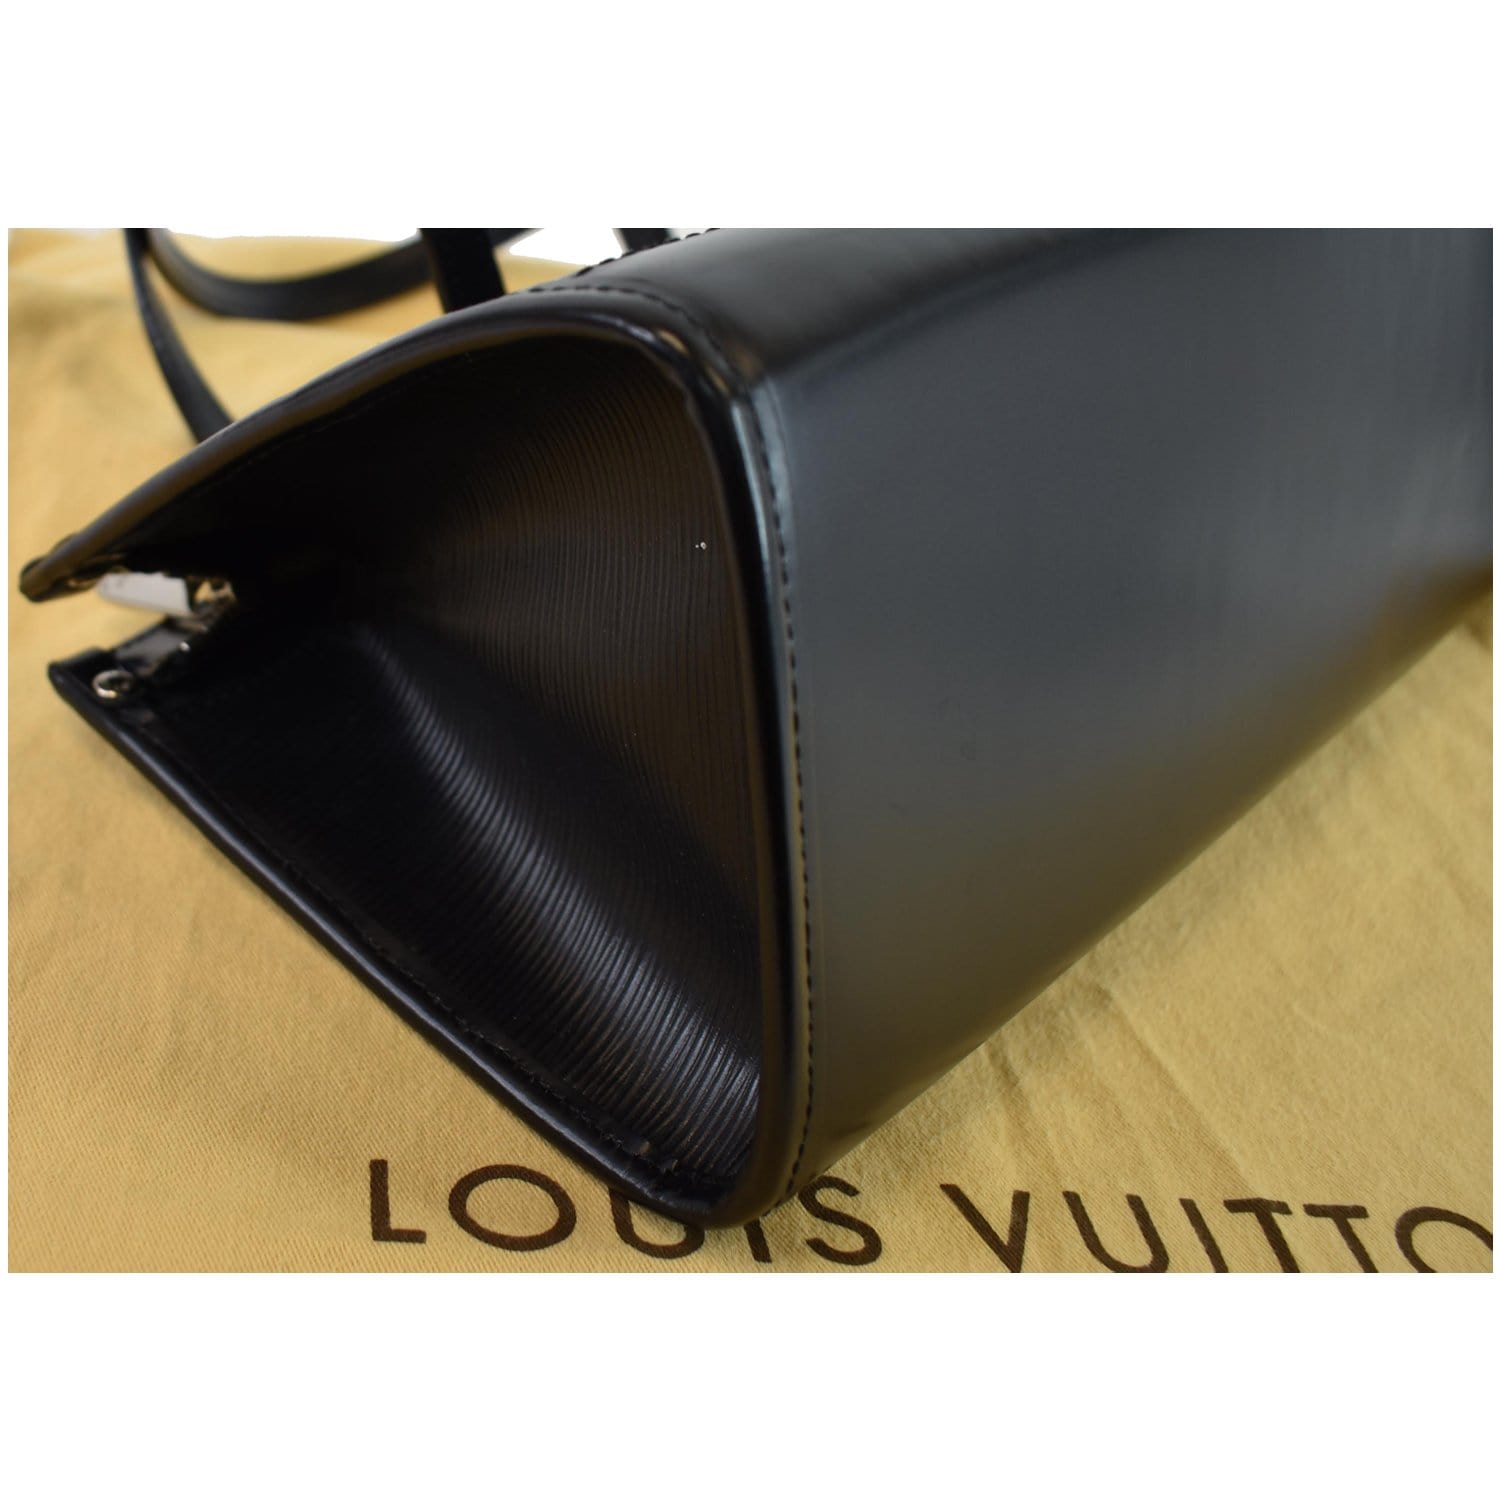 Louis Vuitton Vintage - Epi Madeleine PM - Purple - Epi Leather